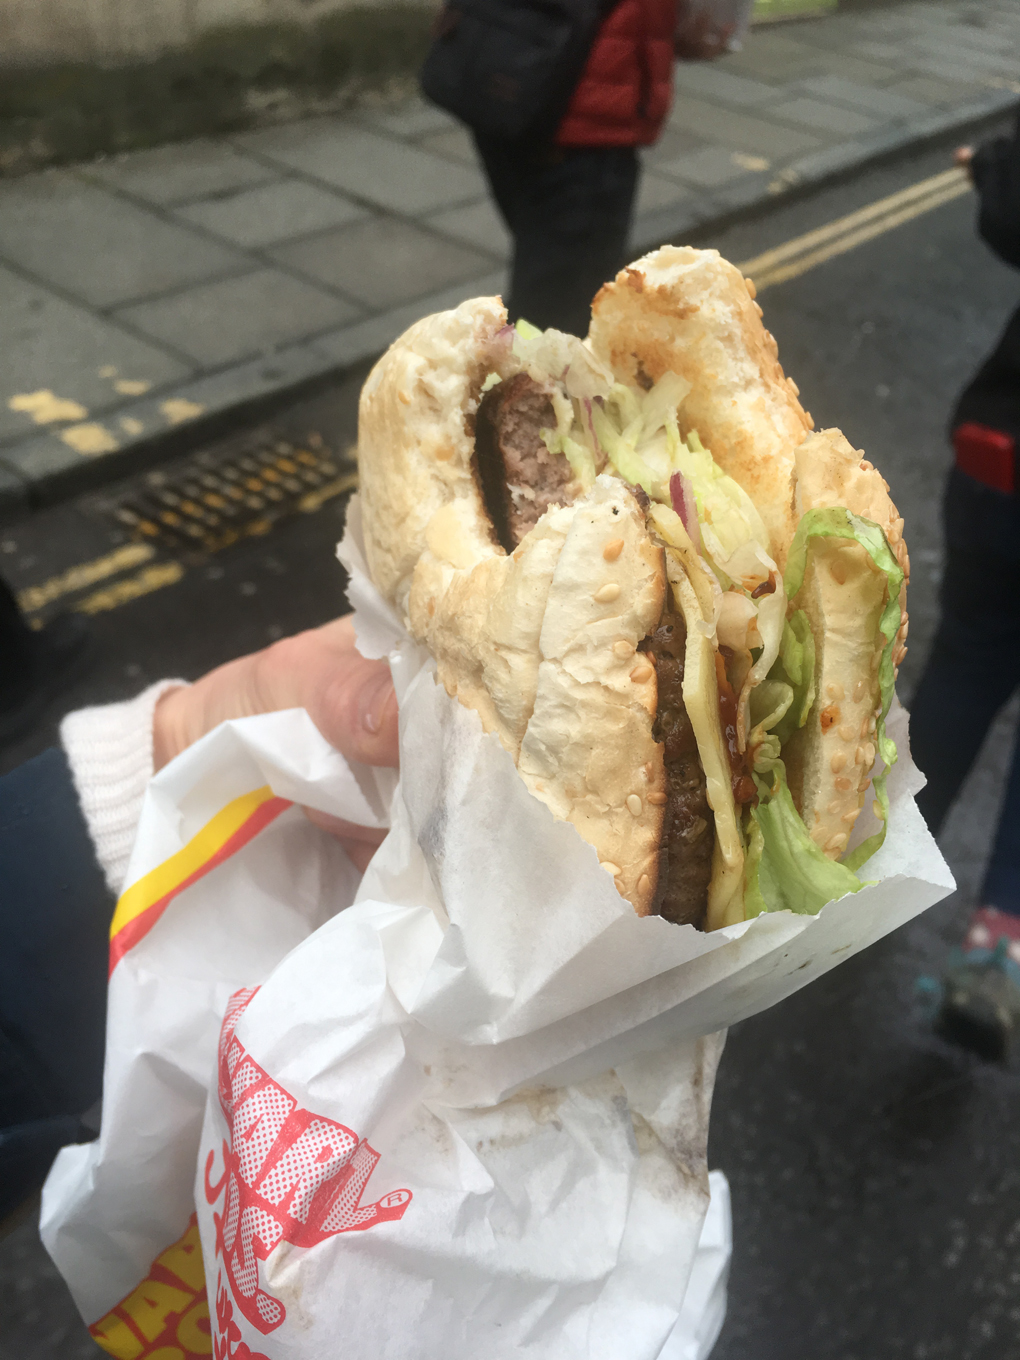 A hand holding a burger with a piece bitten off.